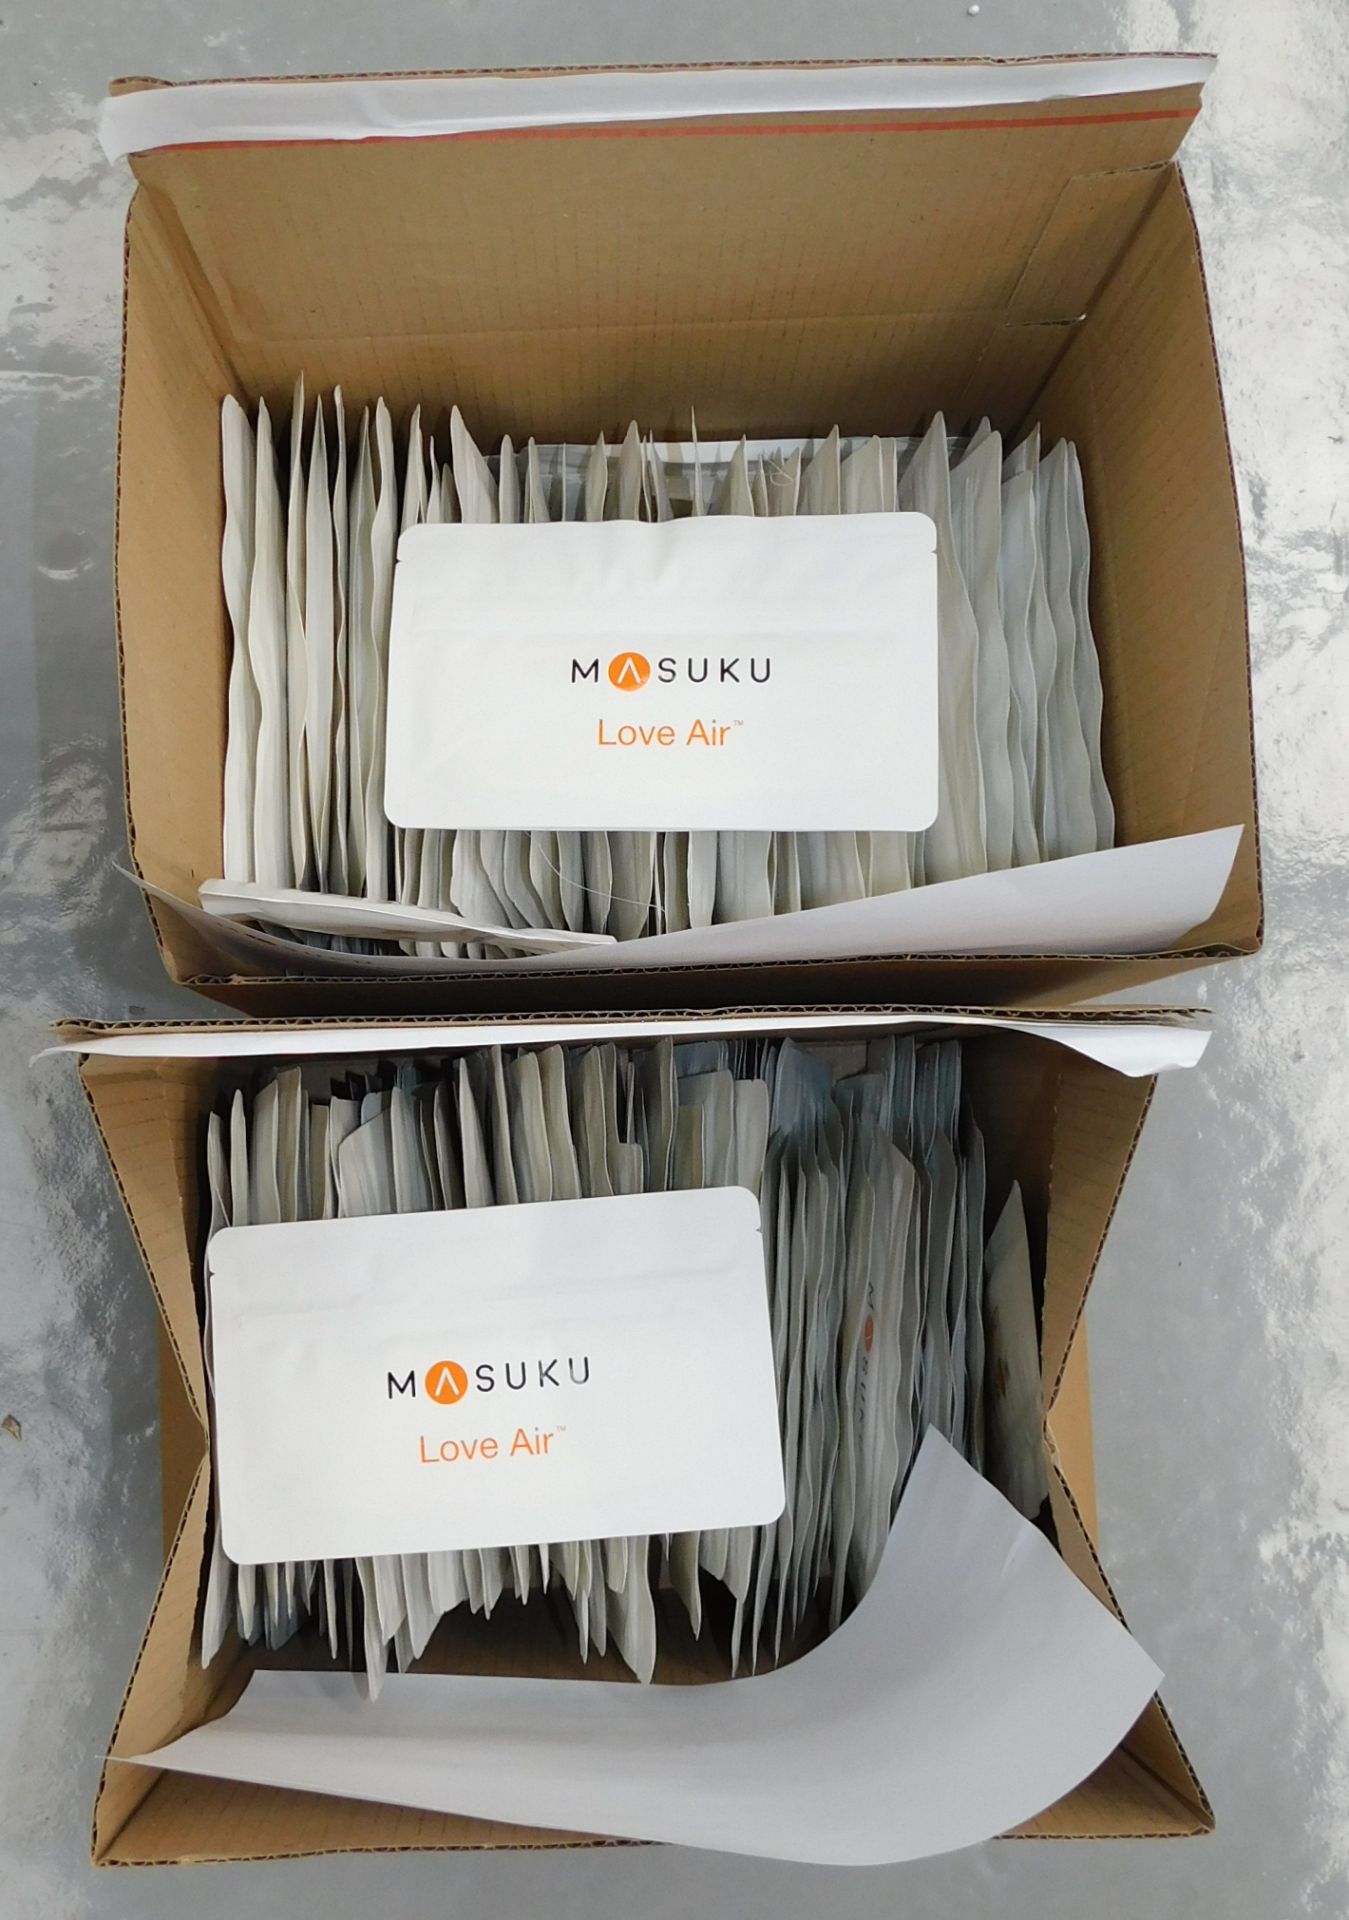 200 Packs (10 Per Pack) of Masuku One Mask Filters (100 Packs Medium & 100 Packs Small)